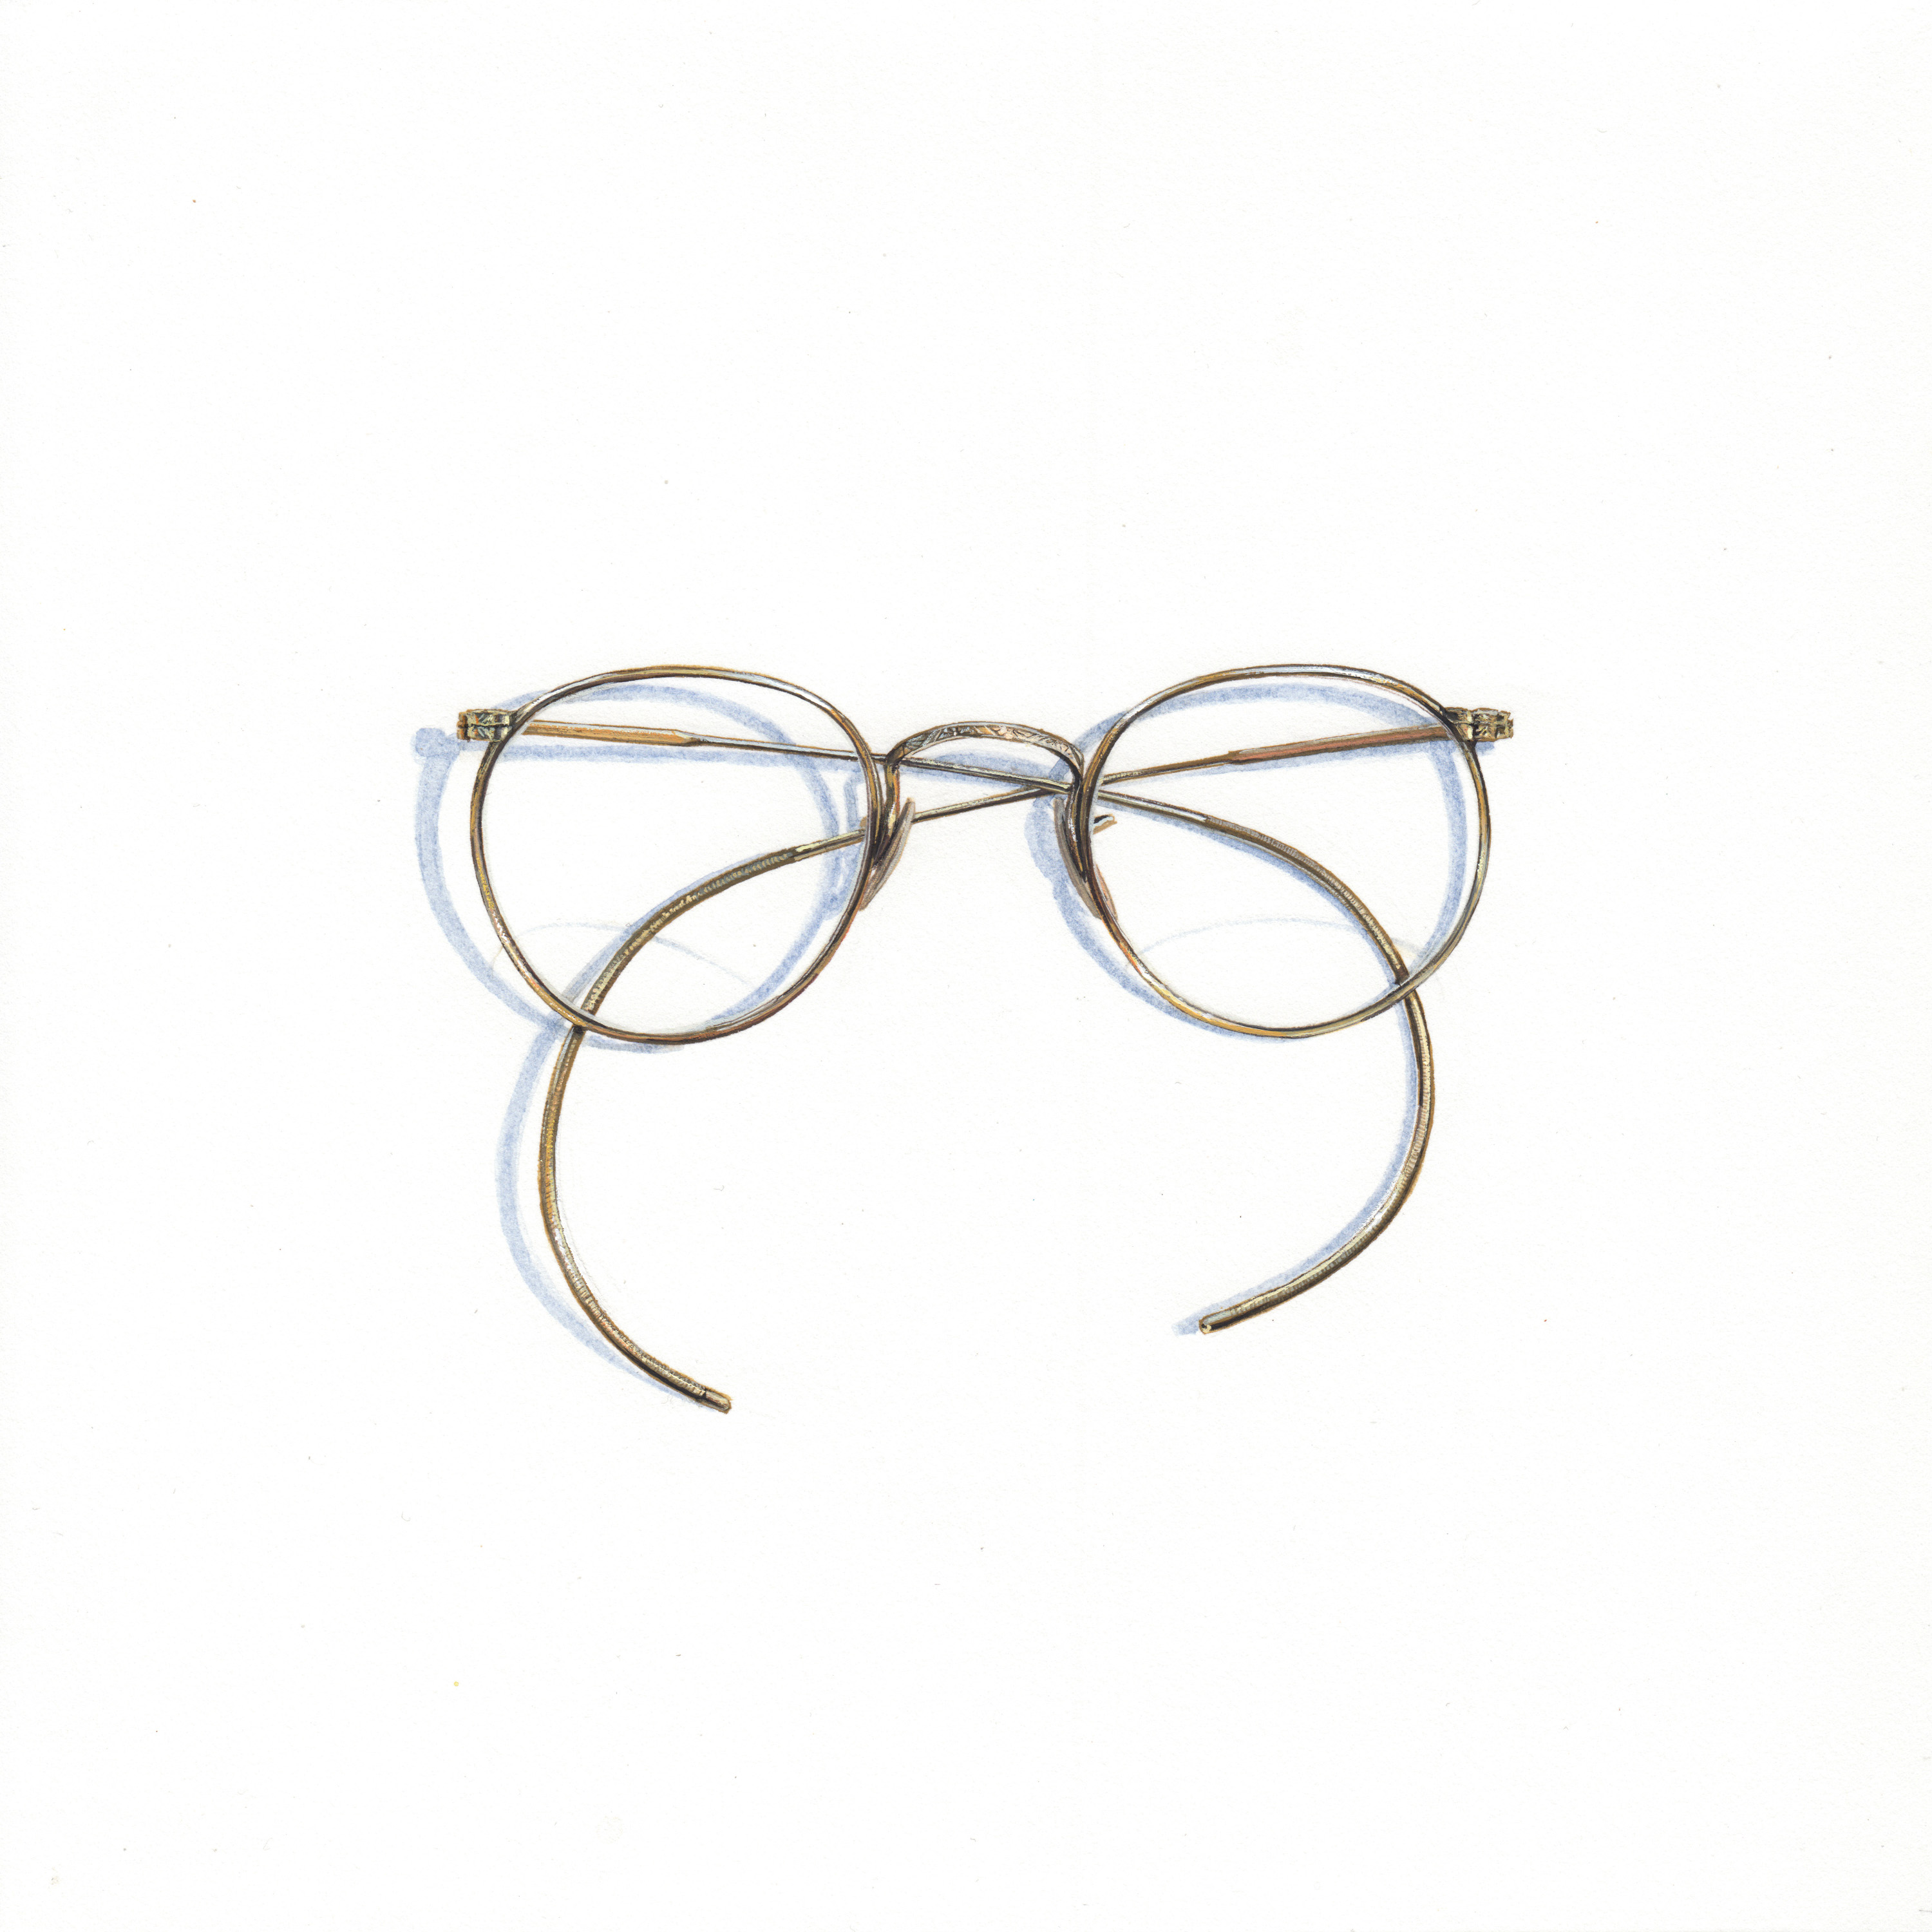 Apophenia: Glasses